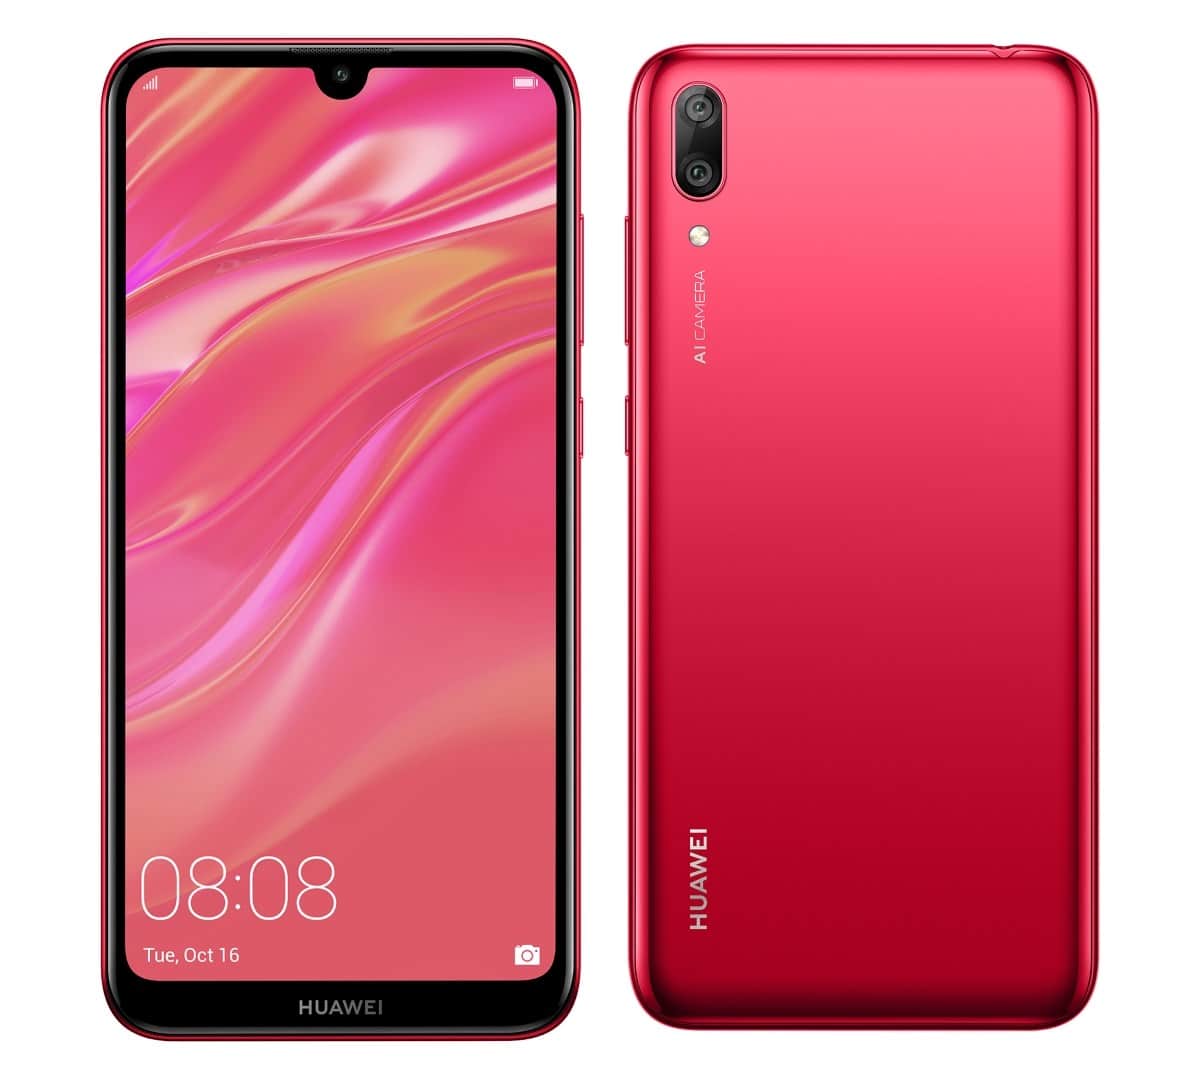 HUAWEI เปิดตัว HUAWEI Y7 Pro 2019 สี Coral Red ต้อนรับสงกรานต์ 3